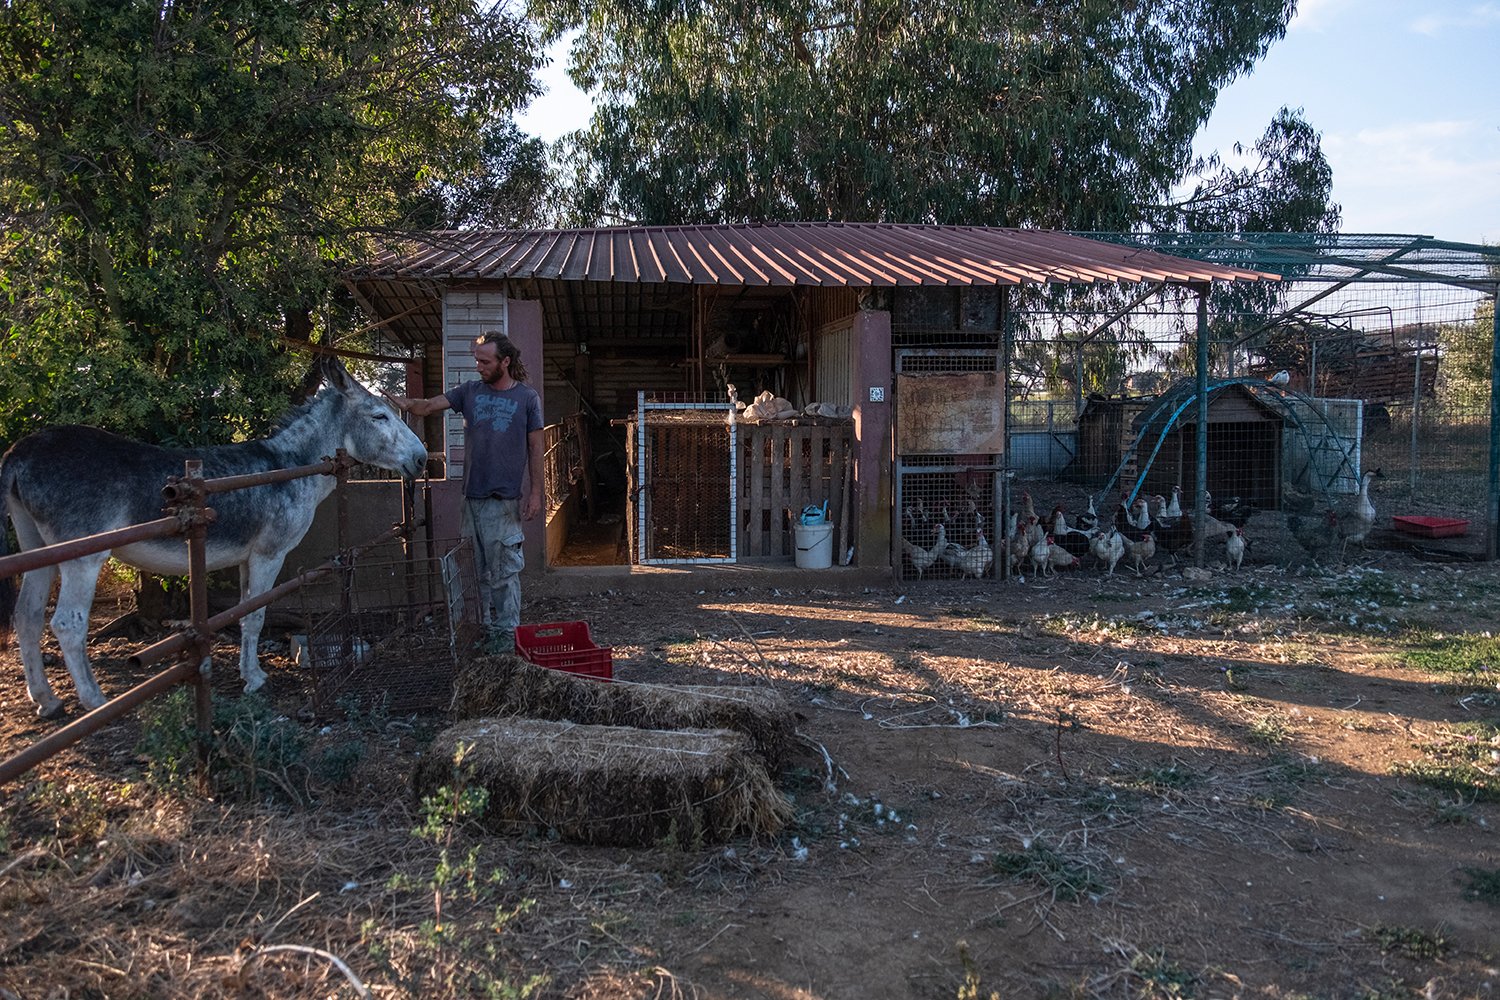  La piccola fattoria posta accanto alle abitazioni dei residenti della Cobragor, è adibita anche a fattoria didattica per i bambini. Roma, 2023 